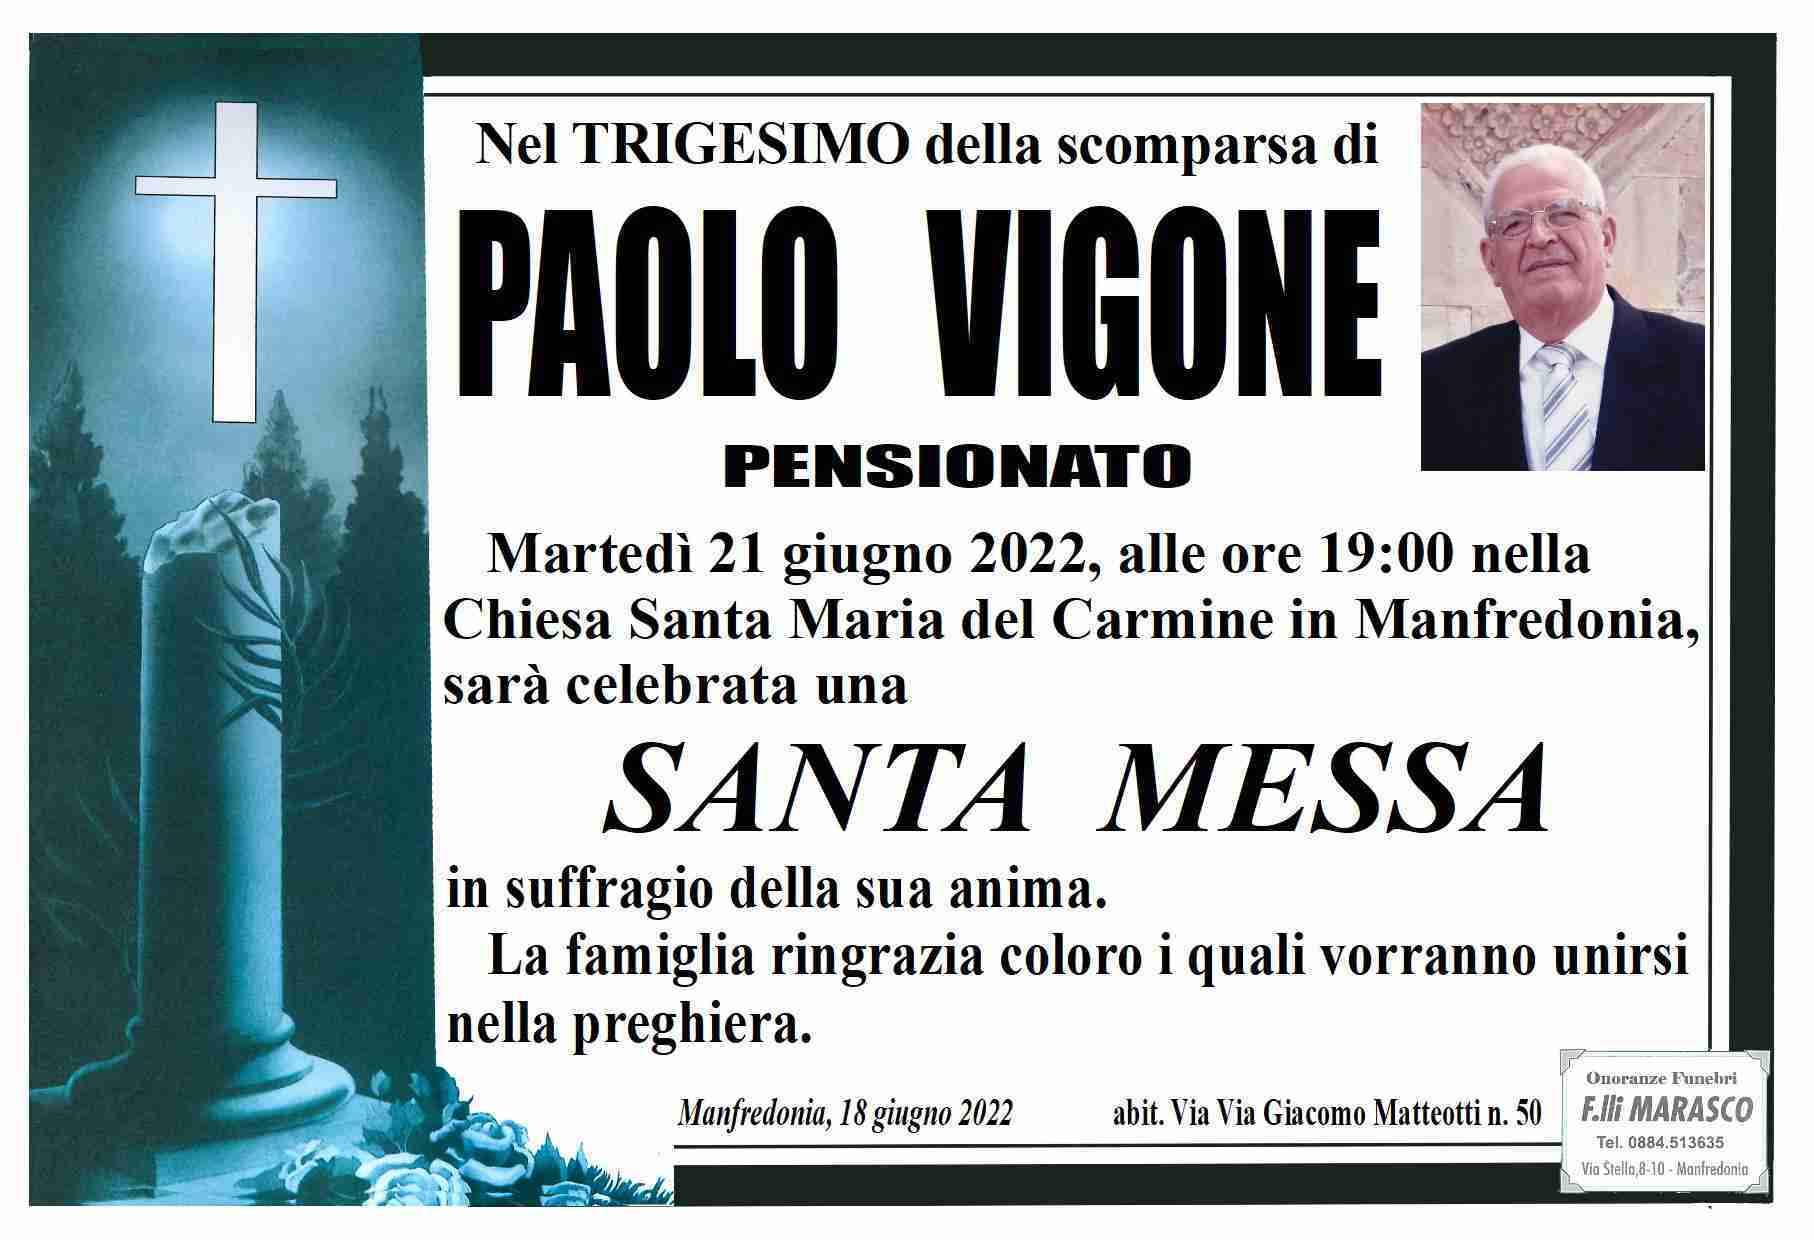 Paolo Vigone